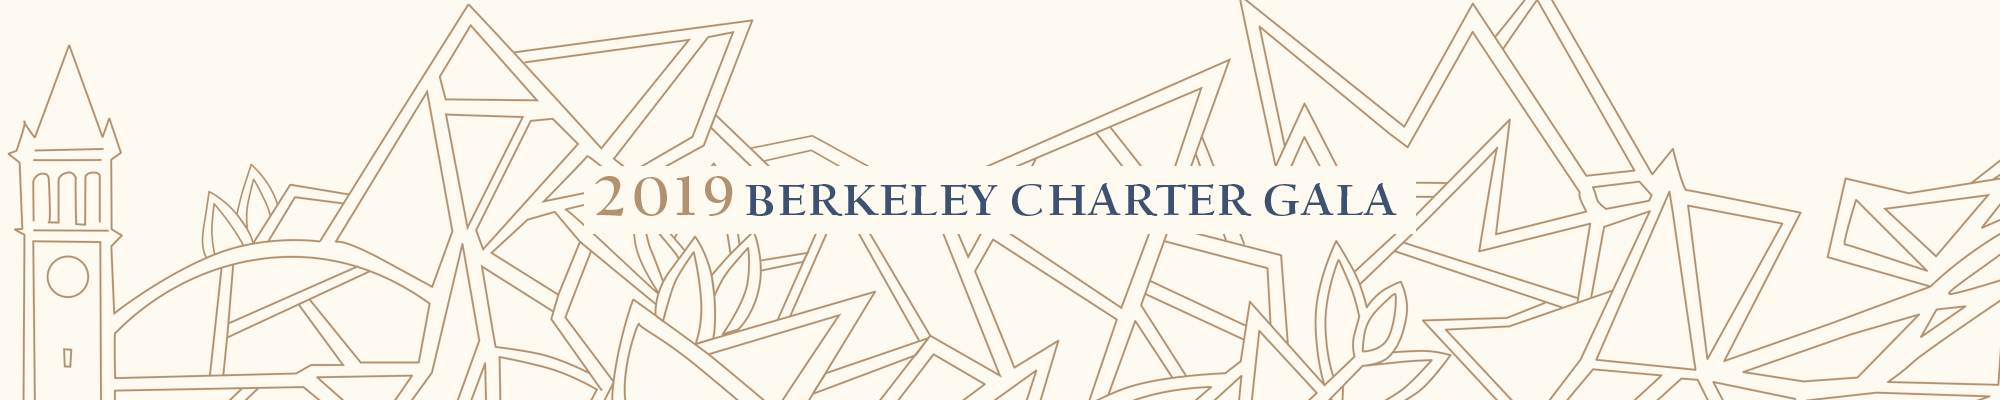 Berkeley Charter Gala 2019